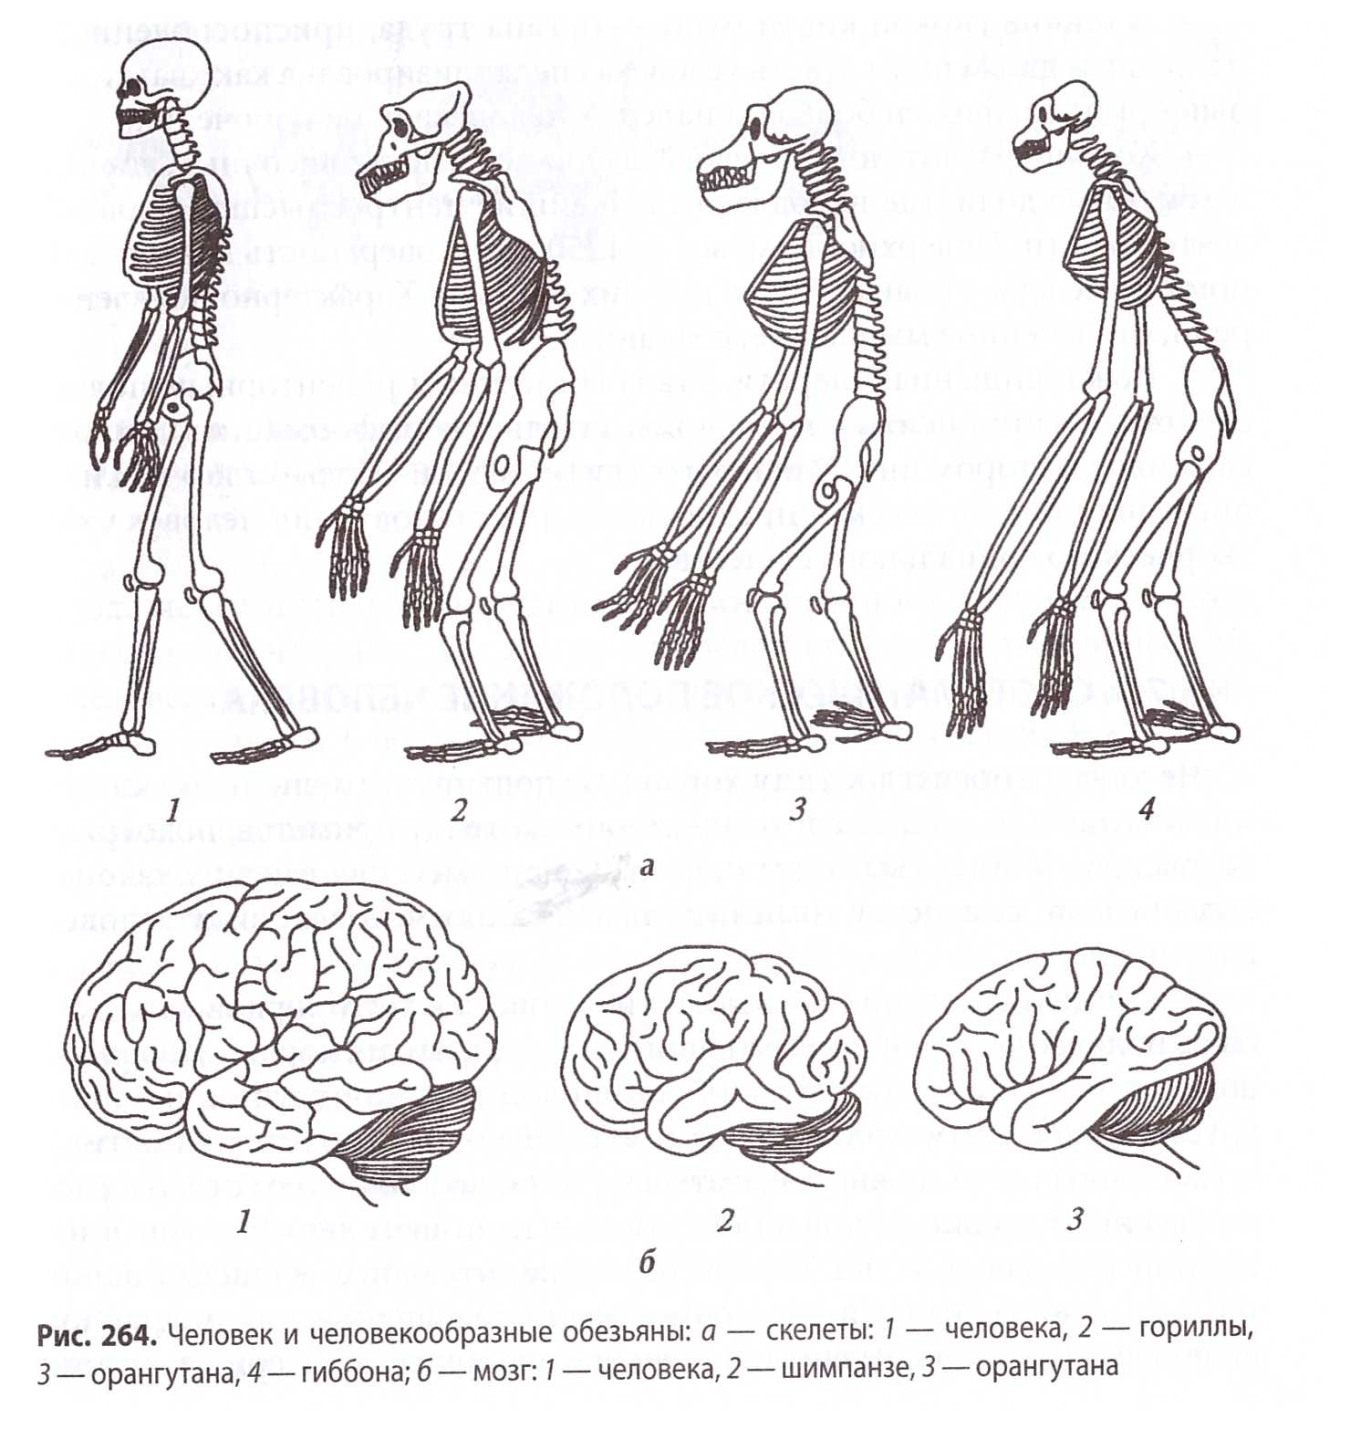 Деятельность человекообразных обезьян. Сравнение скелета человека и человекообразной обезьяны. Строение мозга человекообразной обезьяны. Строение скелета человека и человекообразных обезьян. Эволюция человекообразных обезьян.